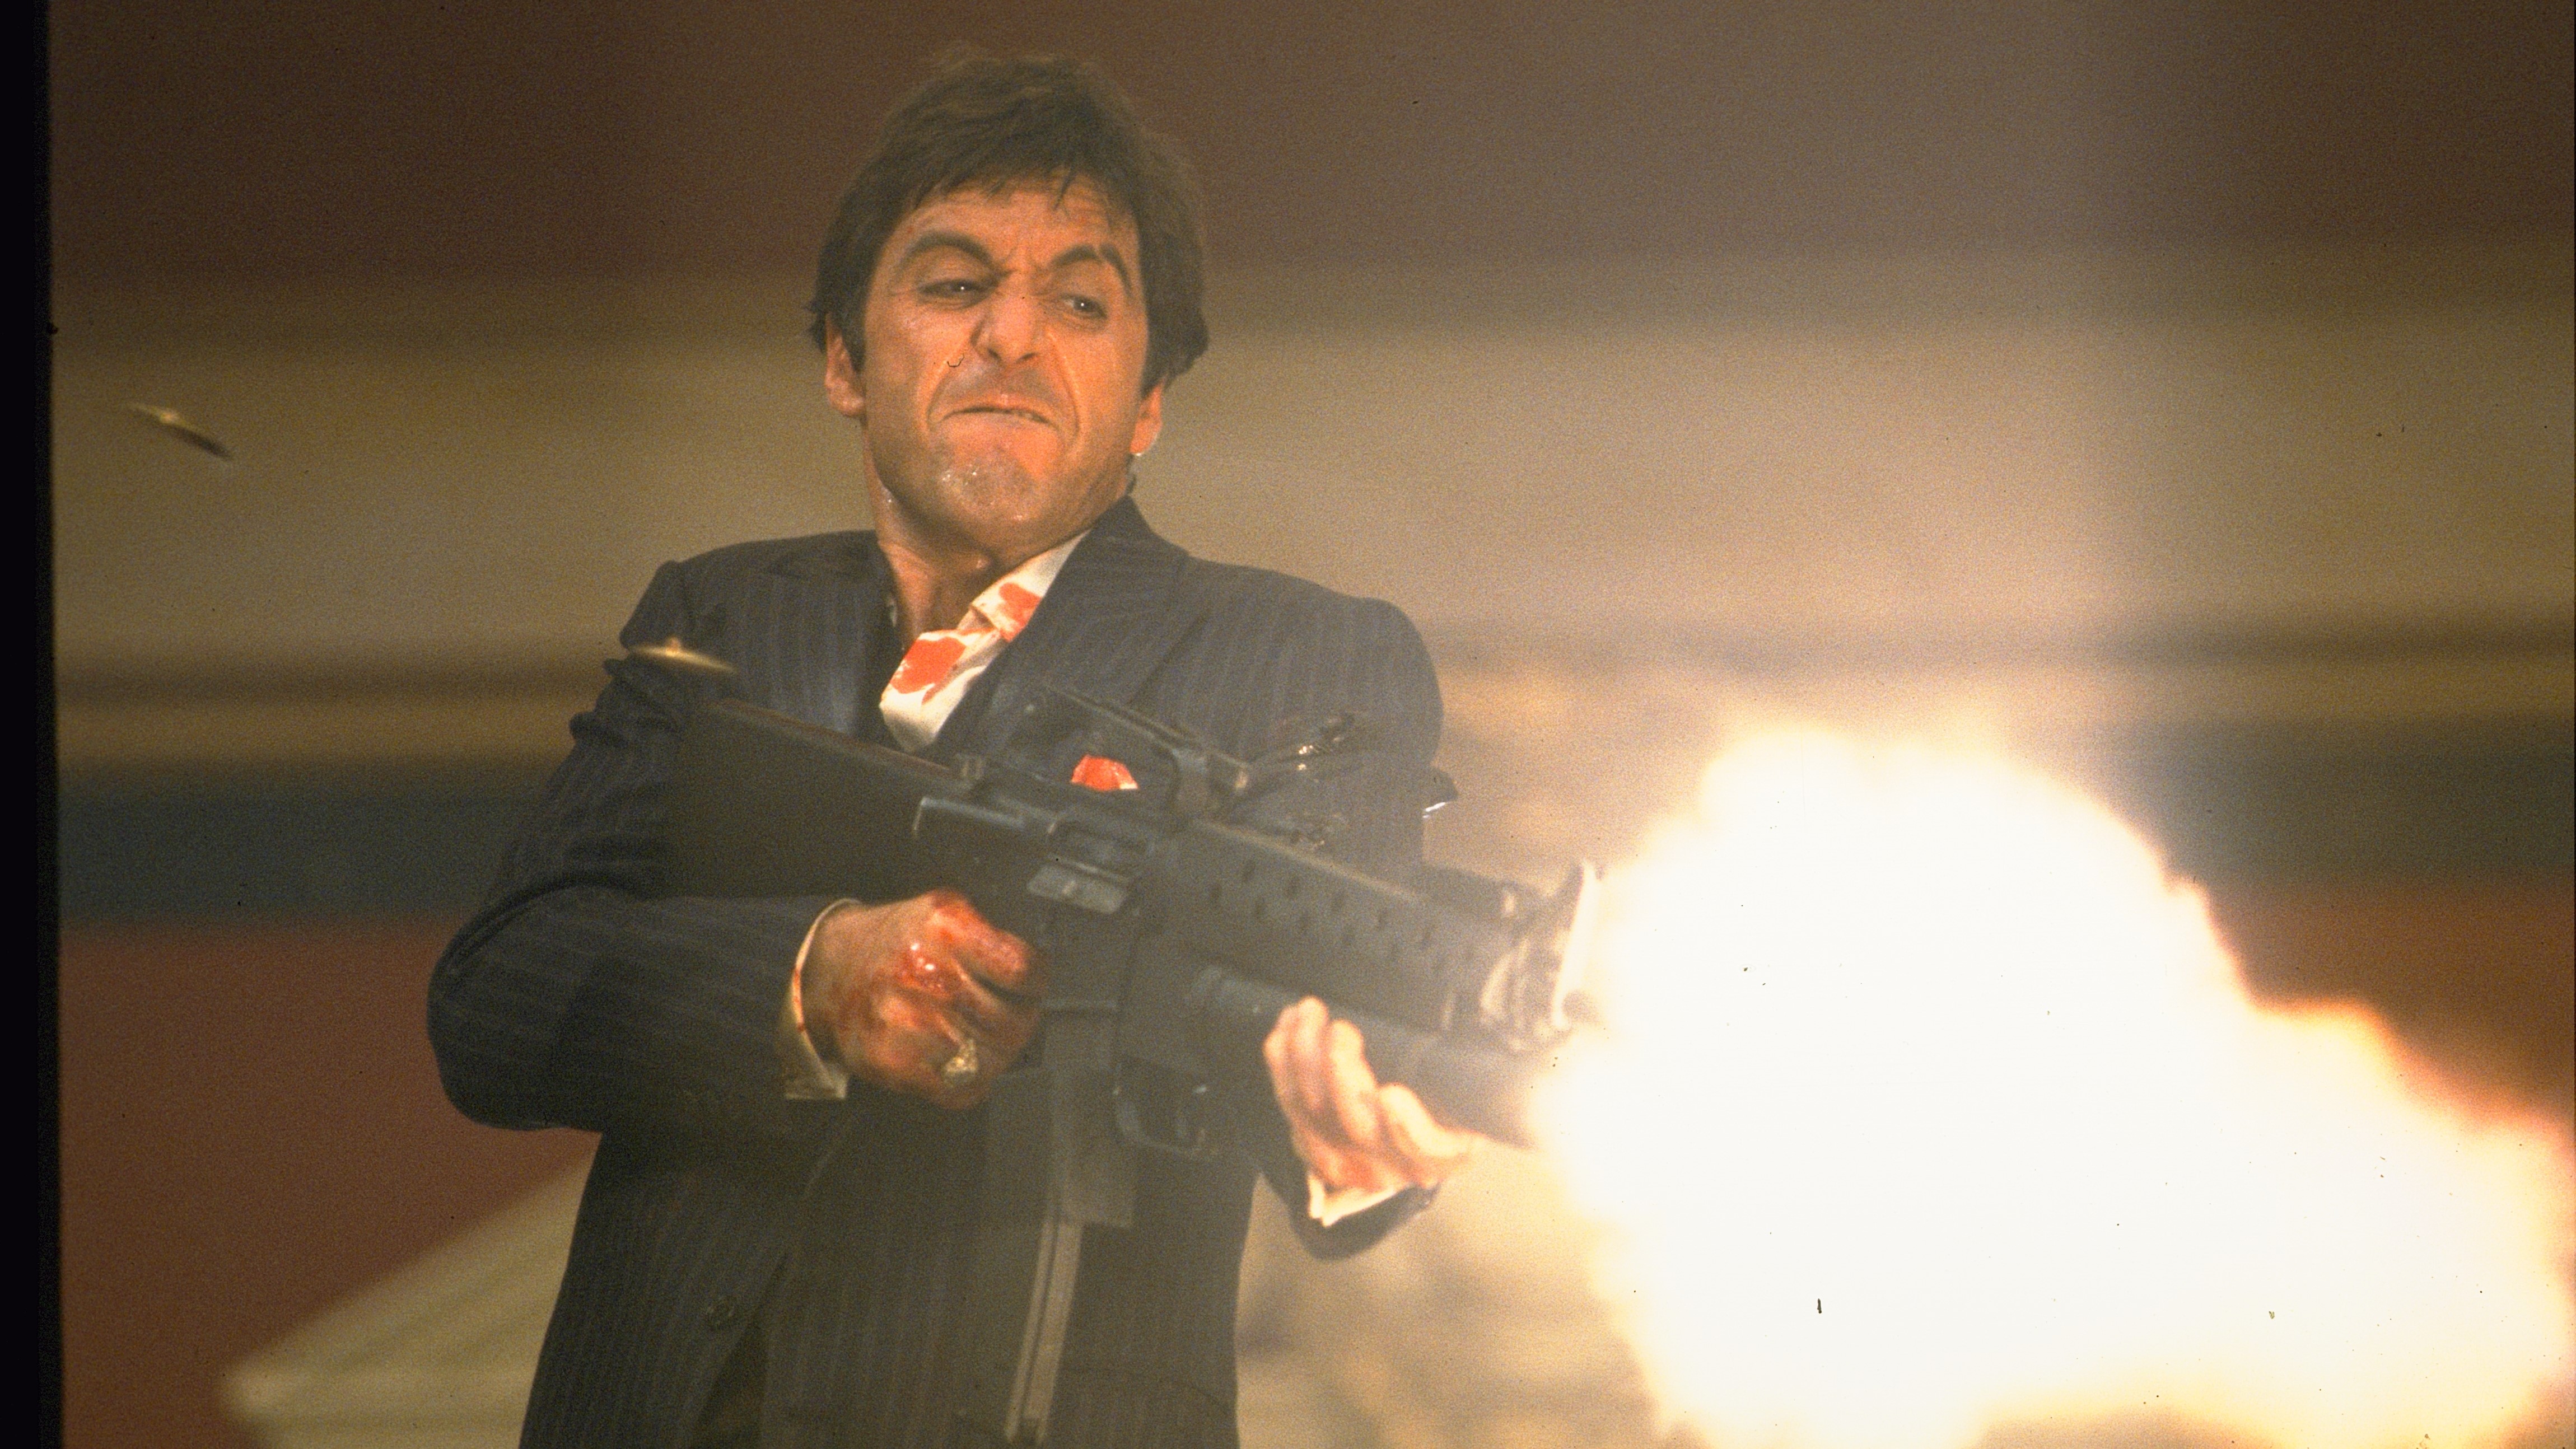 Al Pacino als Tony Montana mit Narbengesicht, der ein Sturmgewehr abfeuert